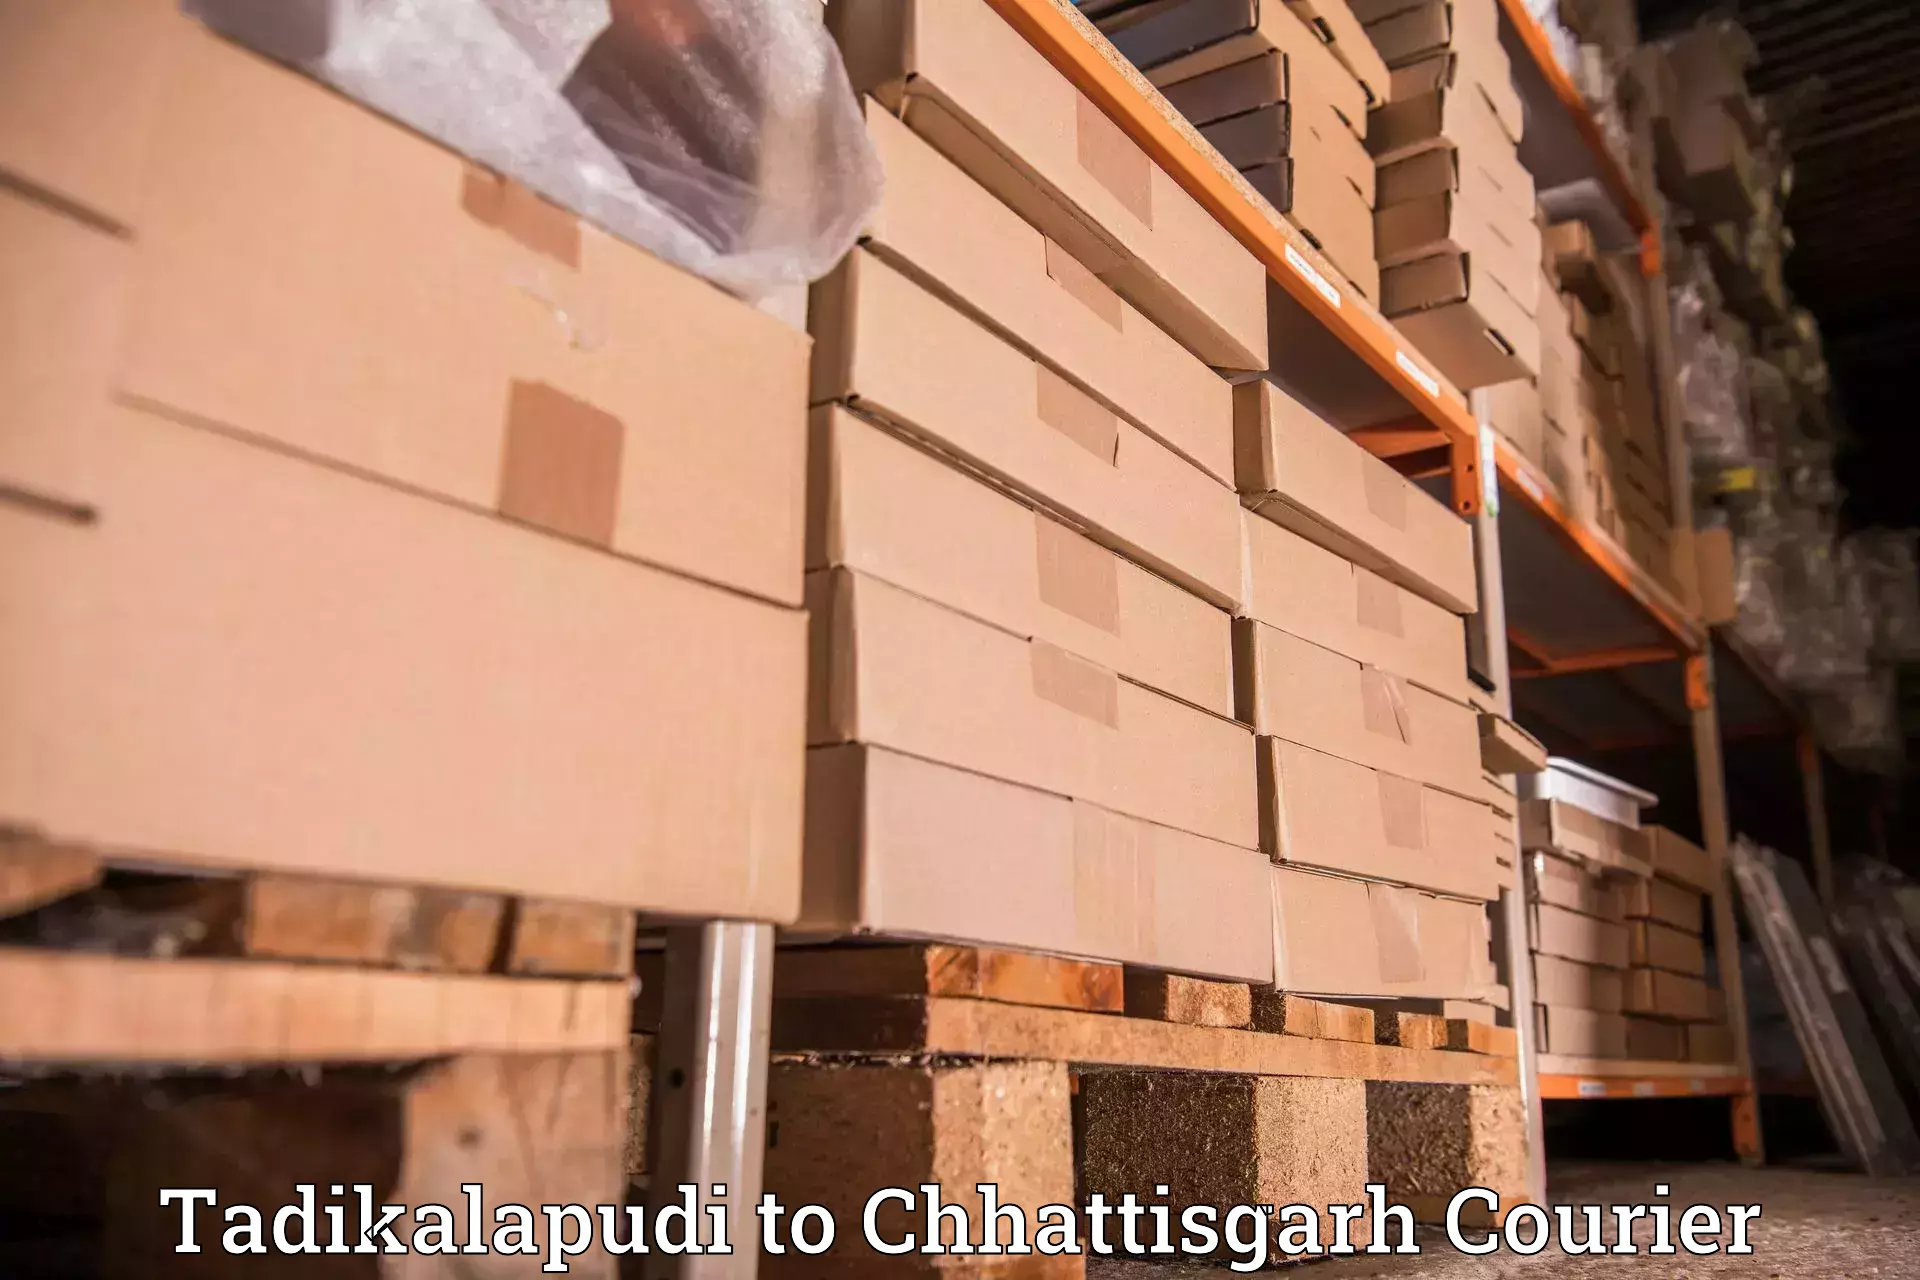 Expedited shipping methods Tadikalapudi to Chhattisgarh